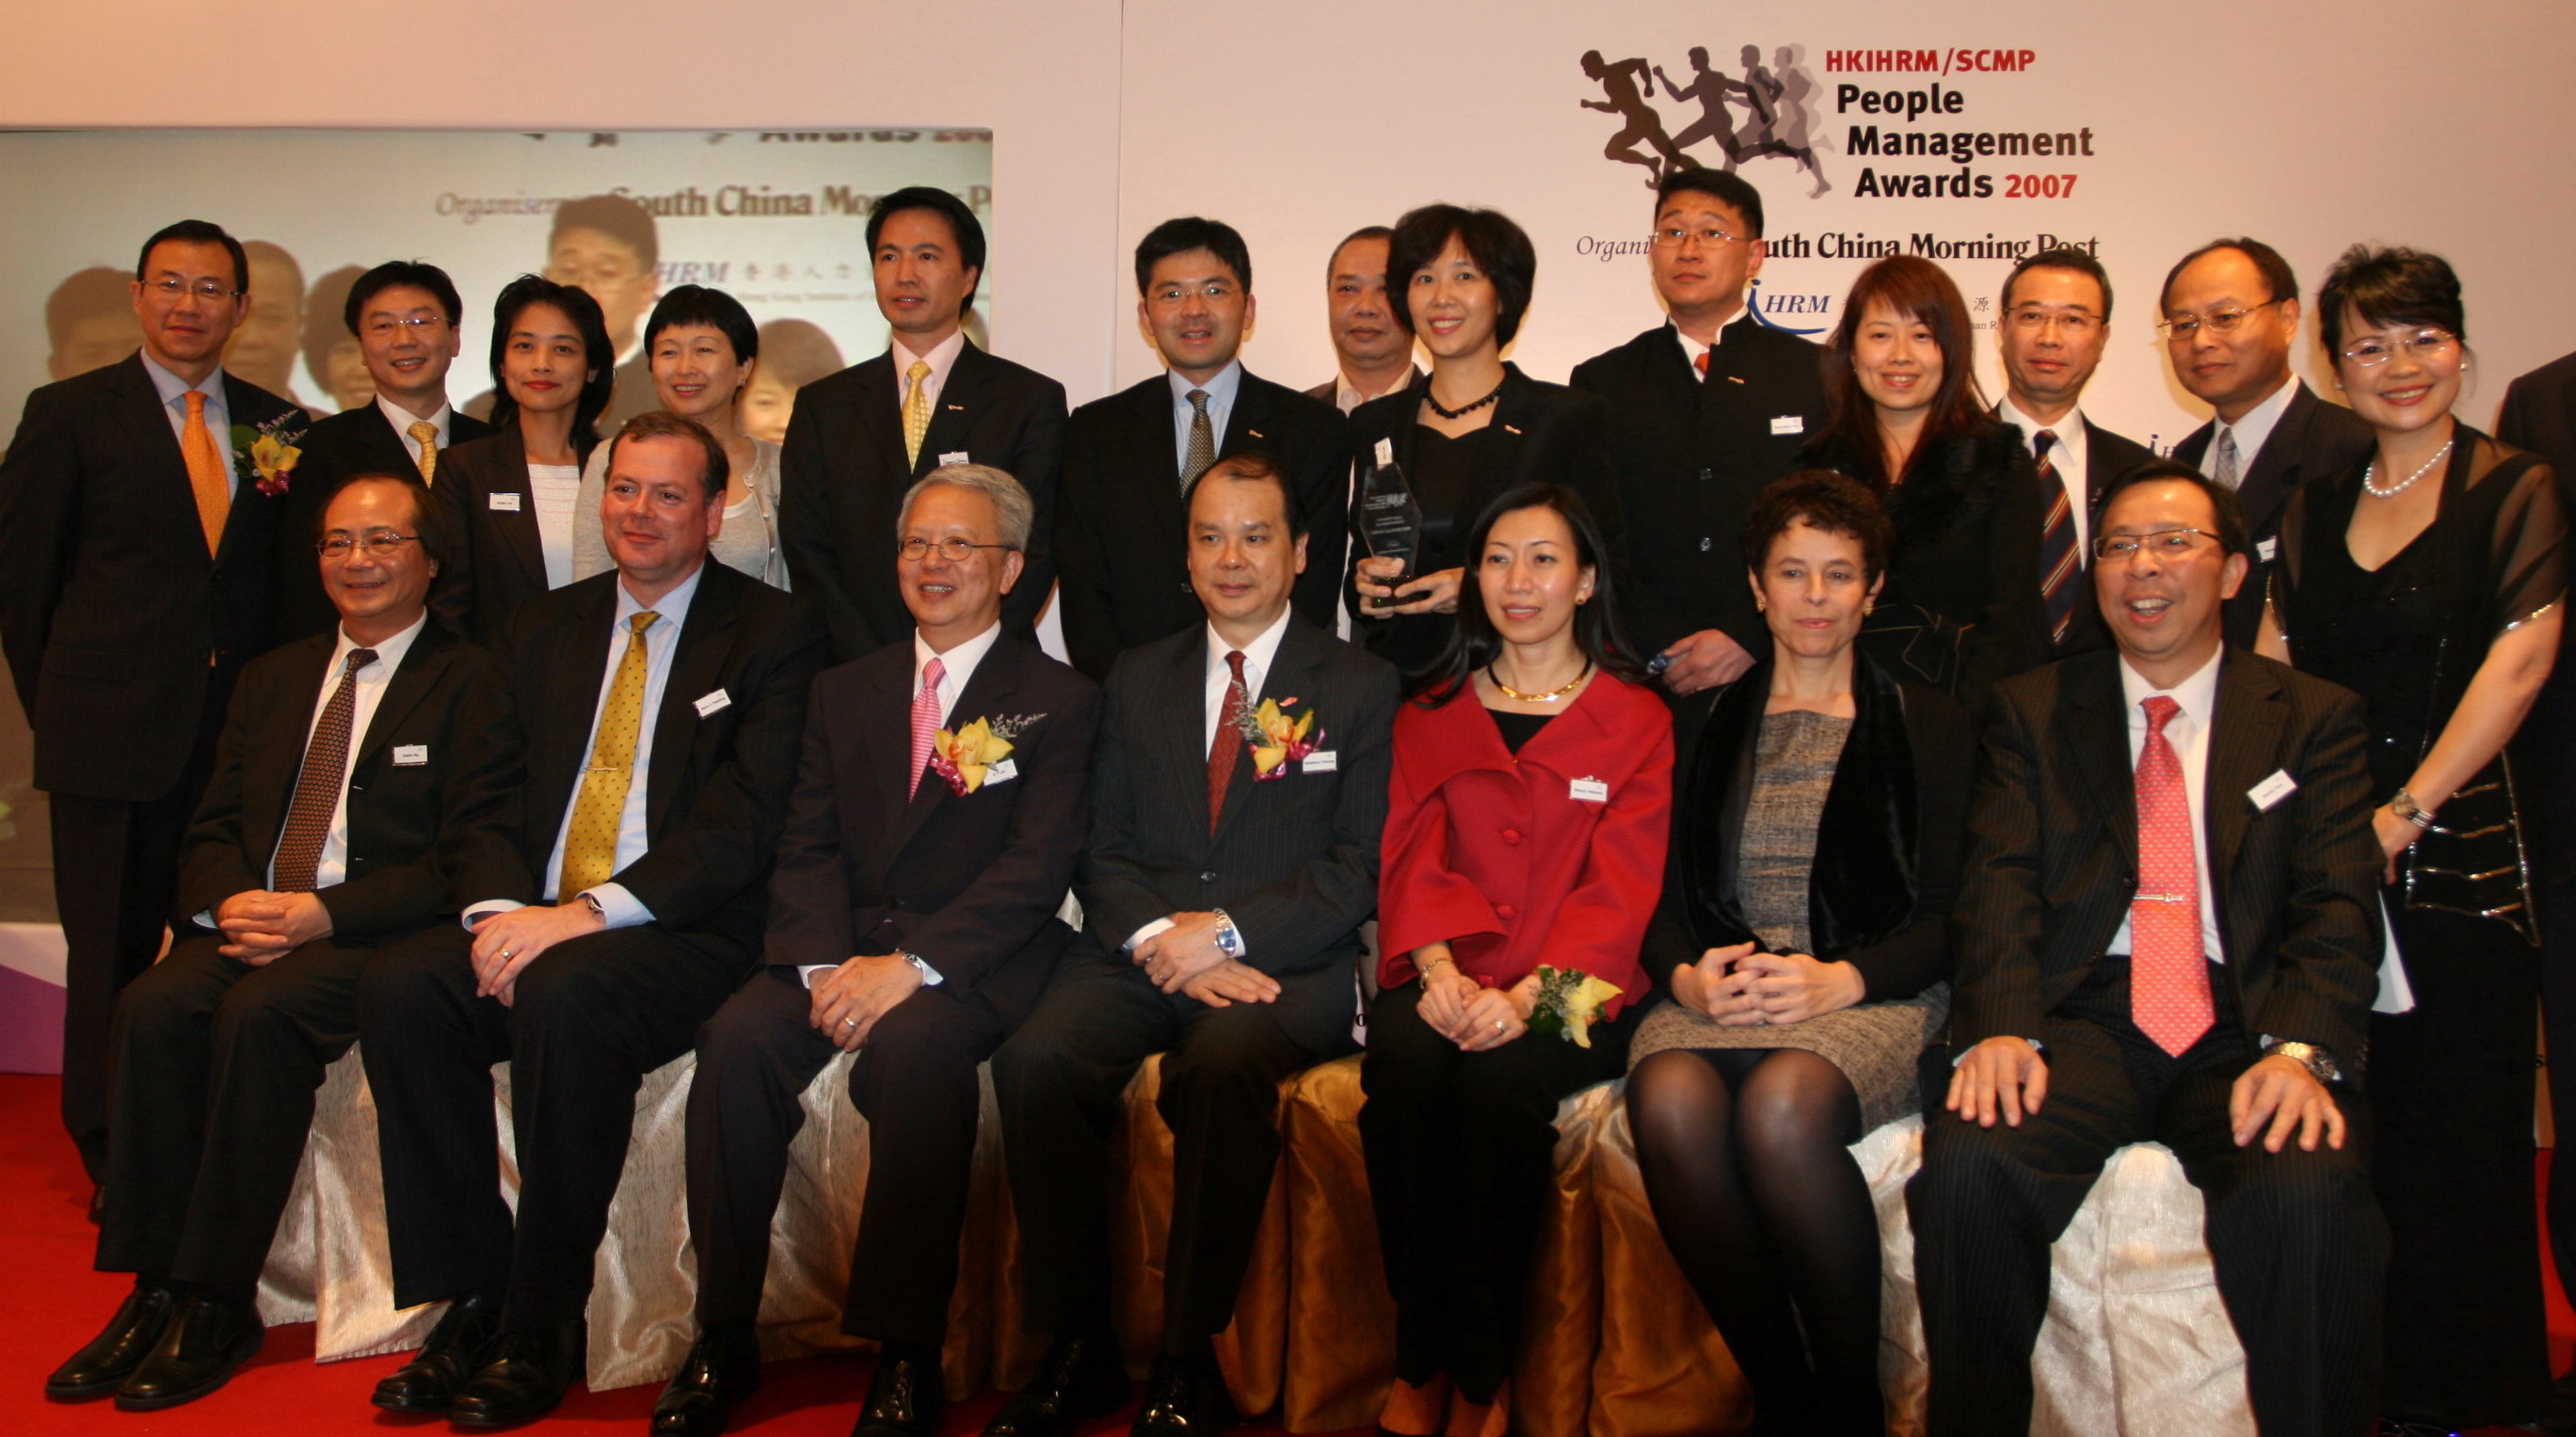 <br/>                NWS Holdings garnered HKIHRM/SCMP People Management Awards 2007 <br/>            